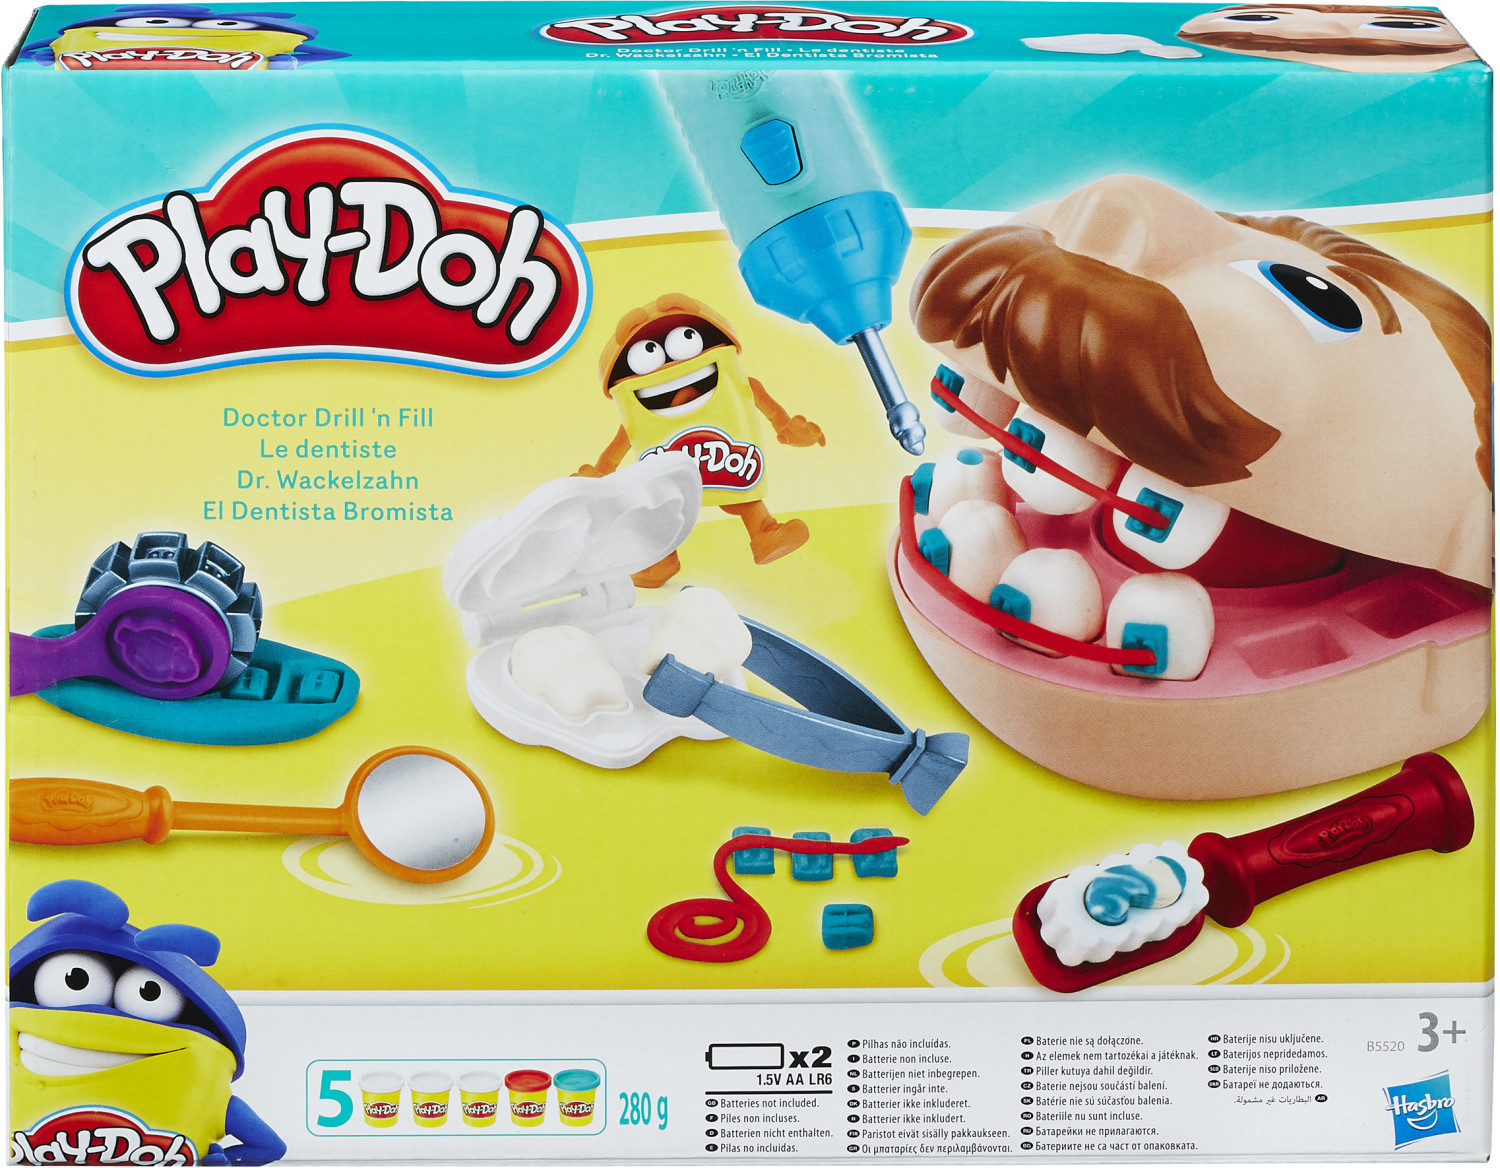 PLAY-DOH Play-Doh Mon super café, 20 accessoires et 8 pots de pâte à  modeler pas cher 